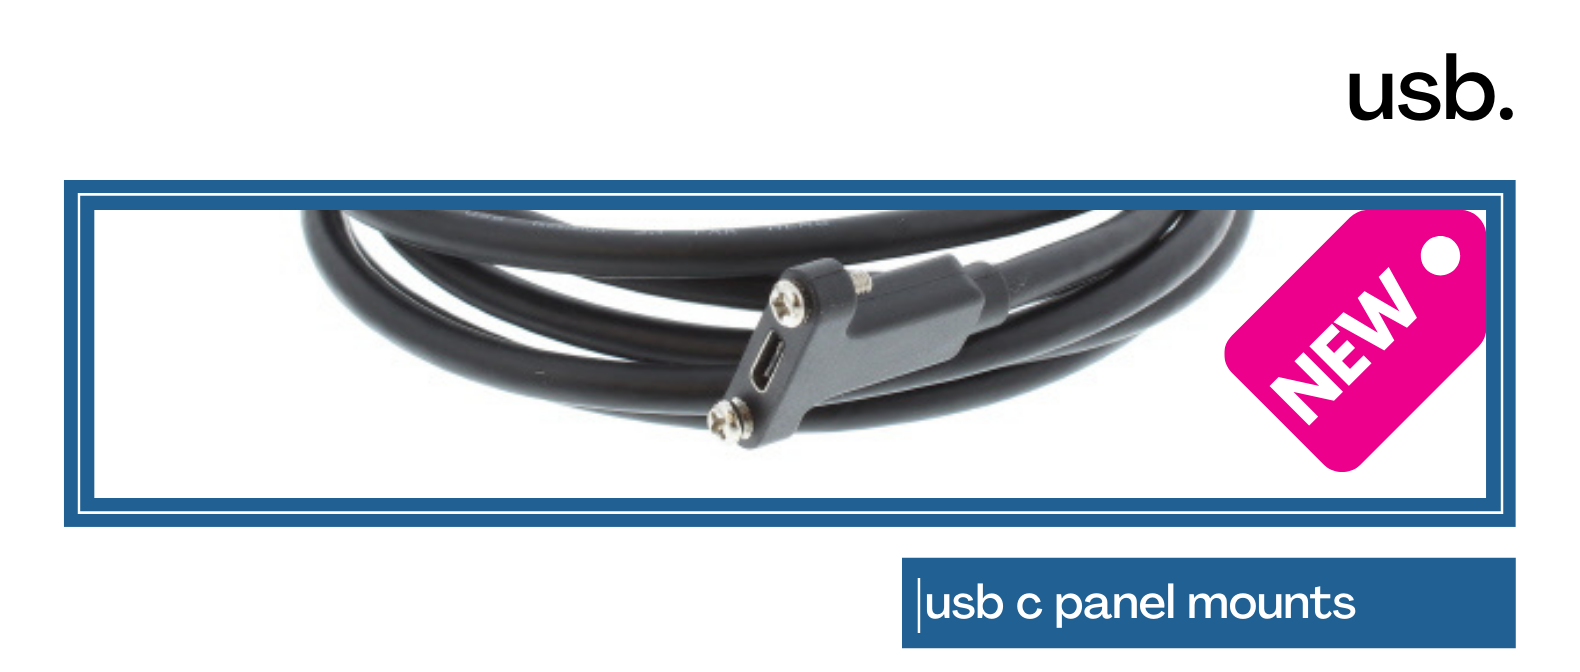 USB-C panel mounts